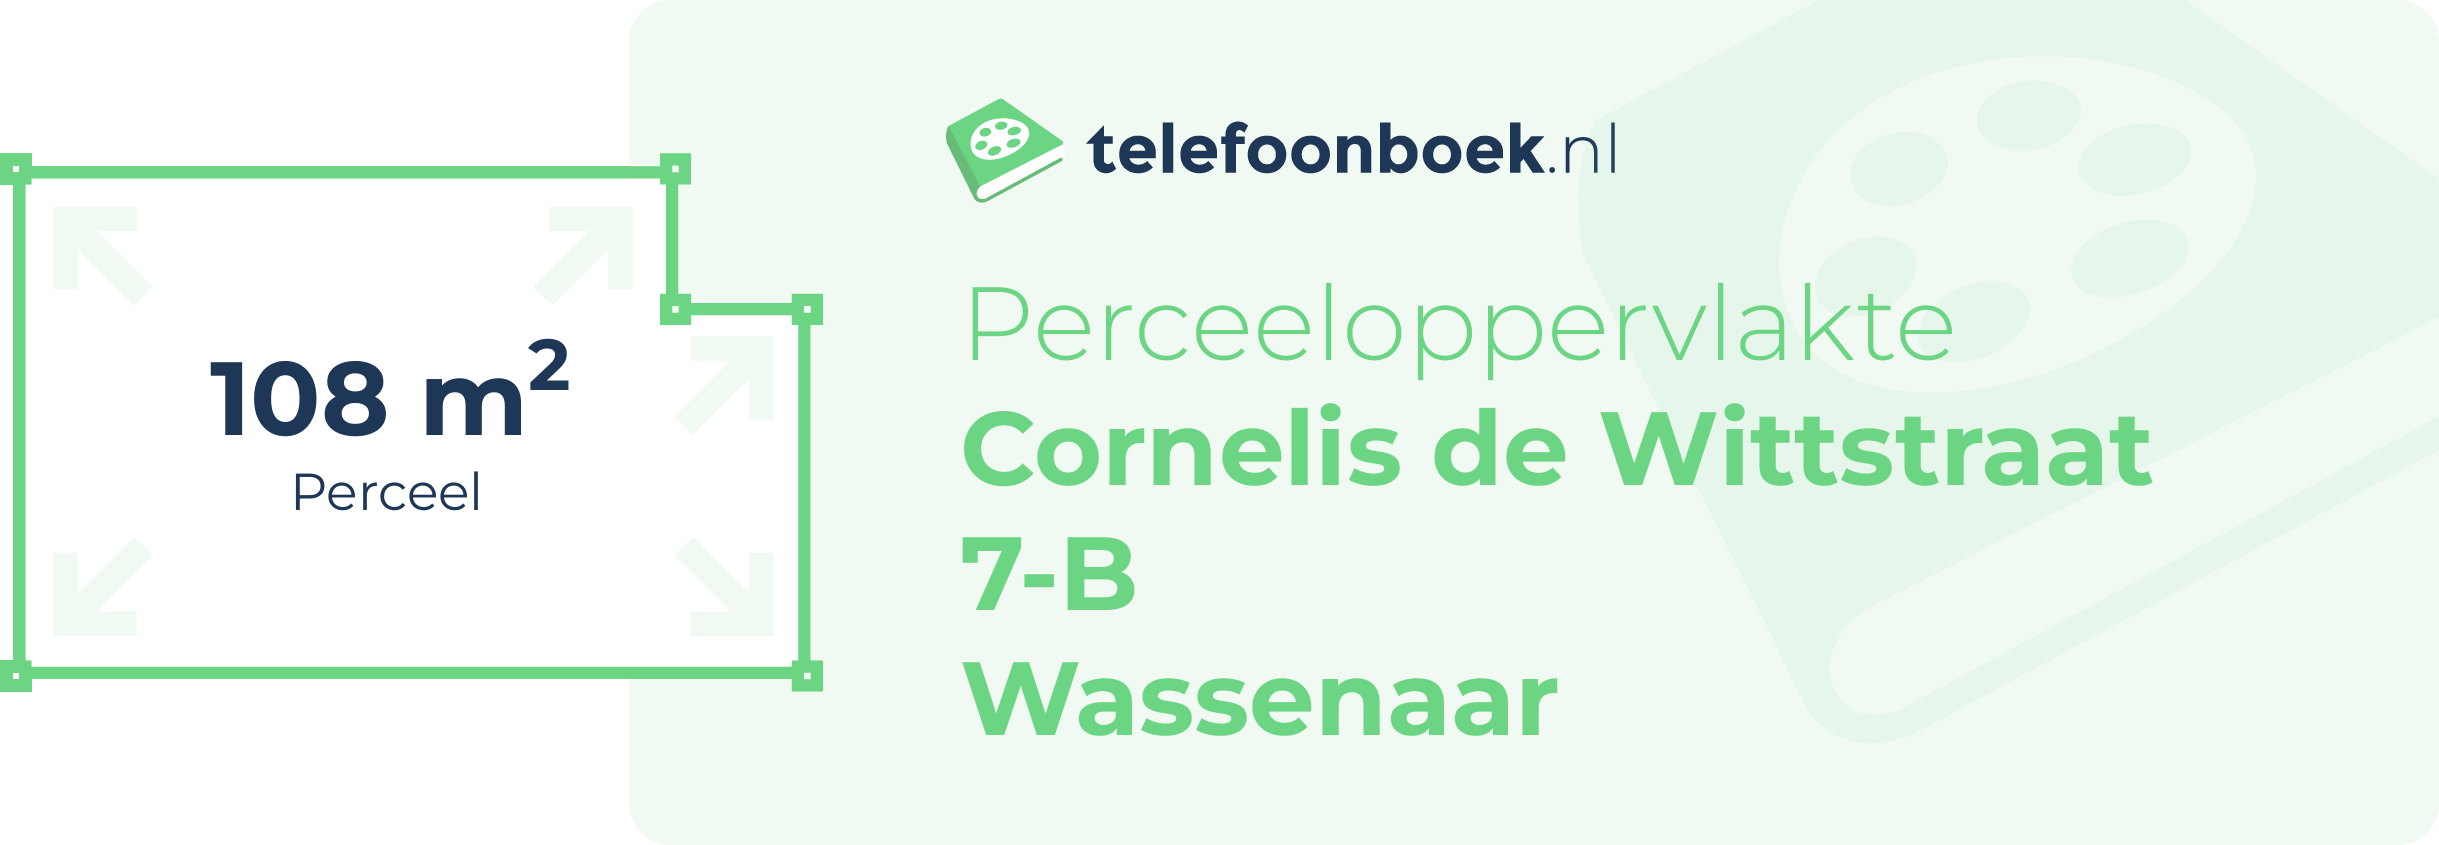 Perceeloppervlakte Cornelis De Wittstraat 7-B Wassenaar